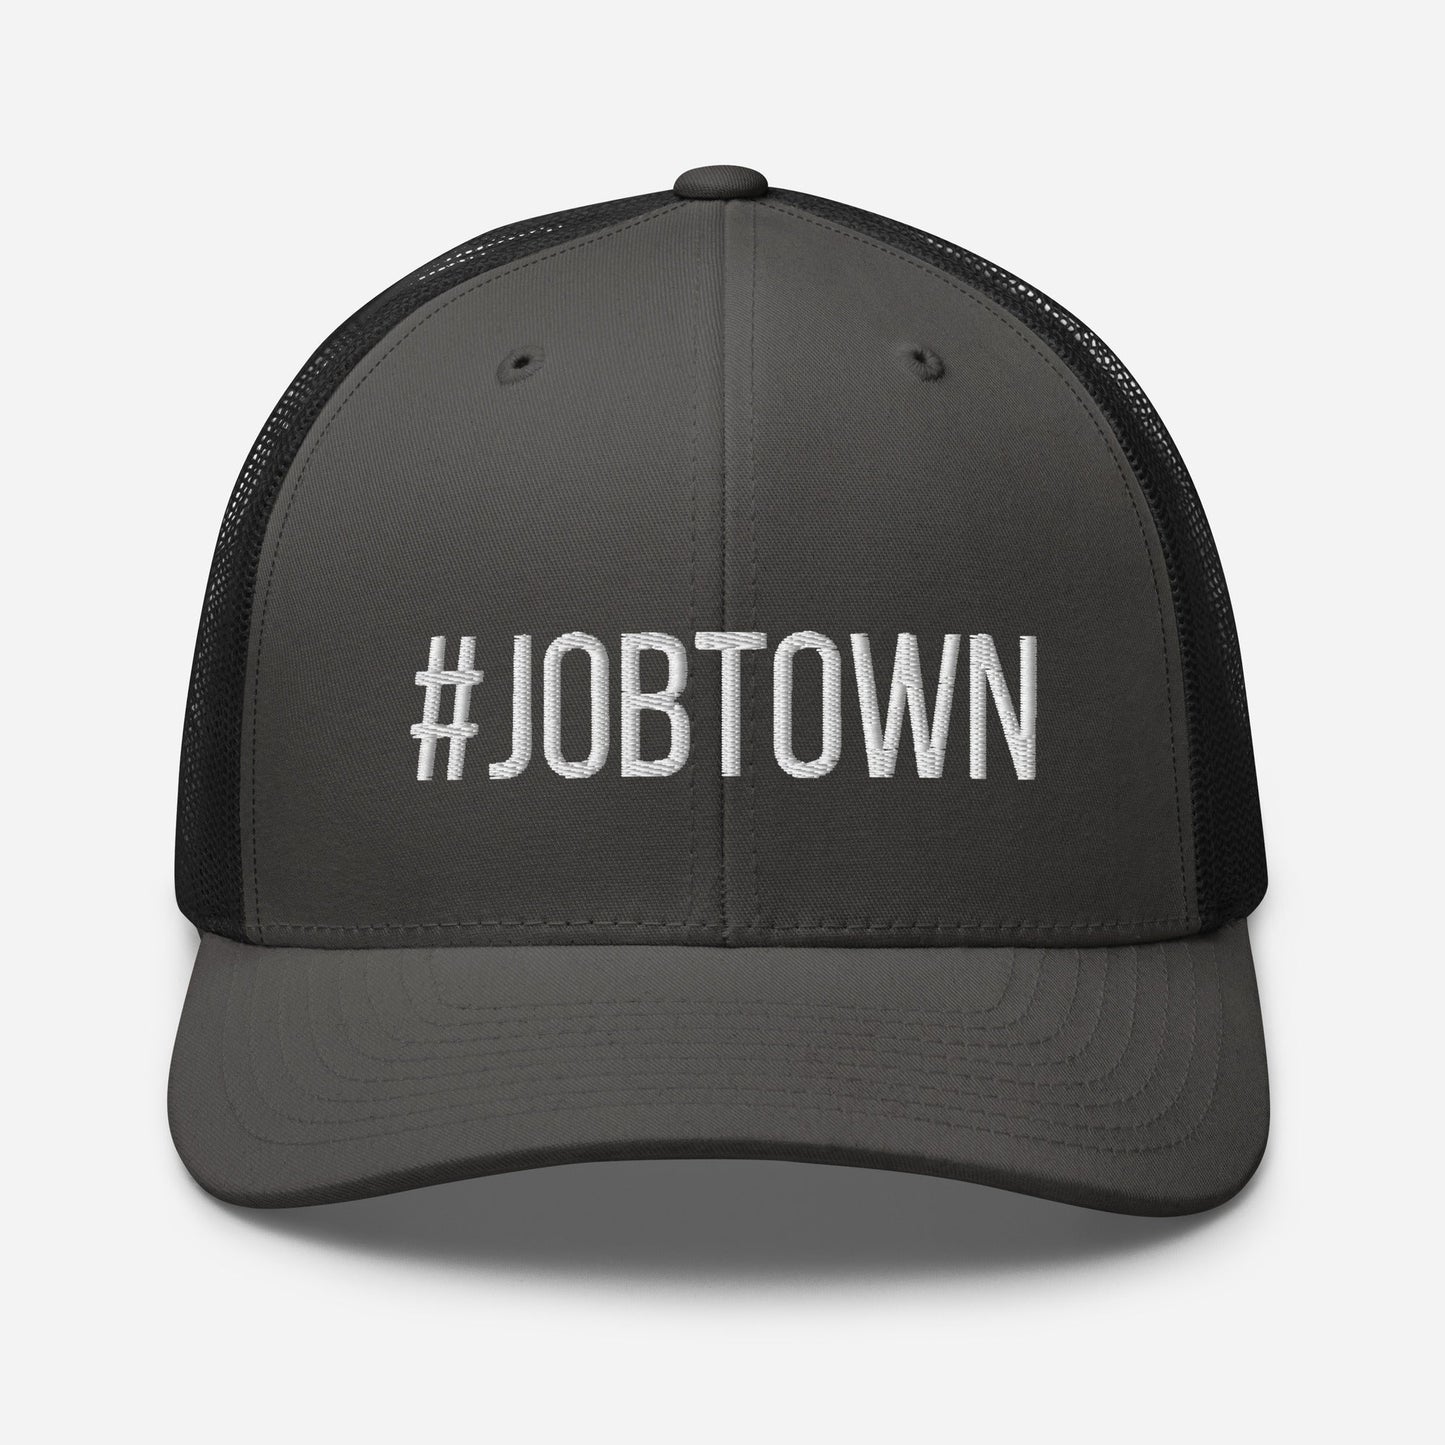 #JOBTOWN Trucker Hat - Grey